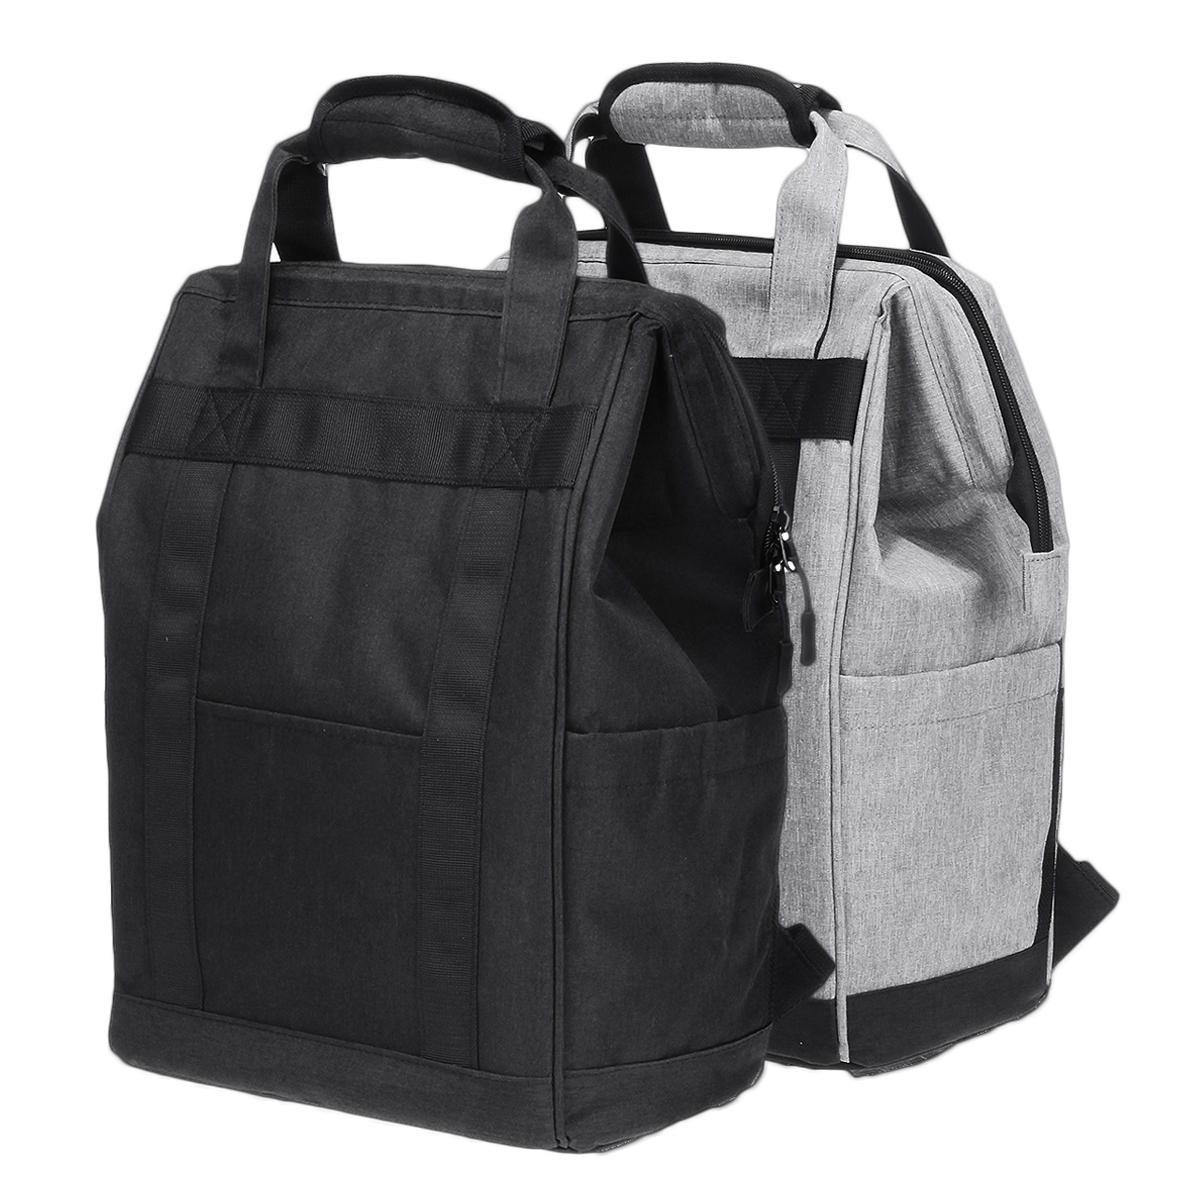 Υπαίθρια μόνωση 20L Ψυκτική σακίδιο κάμπινγκ τσάντα για πικ-νικ Παγωμένη τσάντα μόνωσης μεγάλης χωρητικότητας